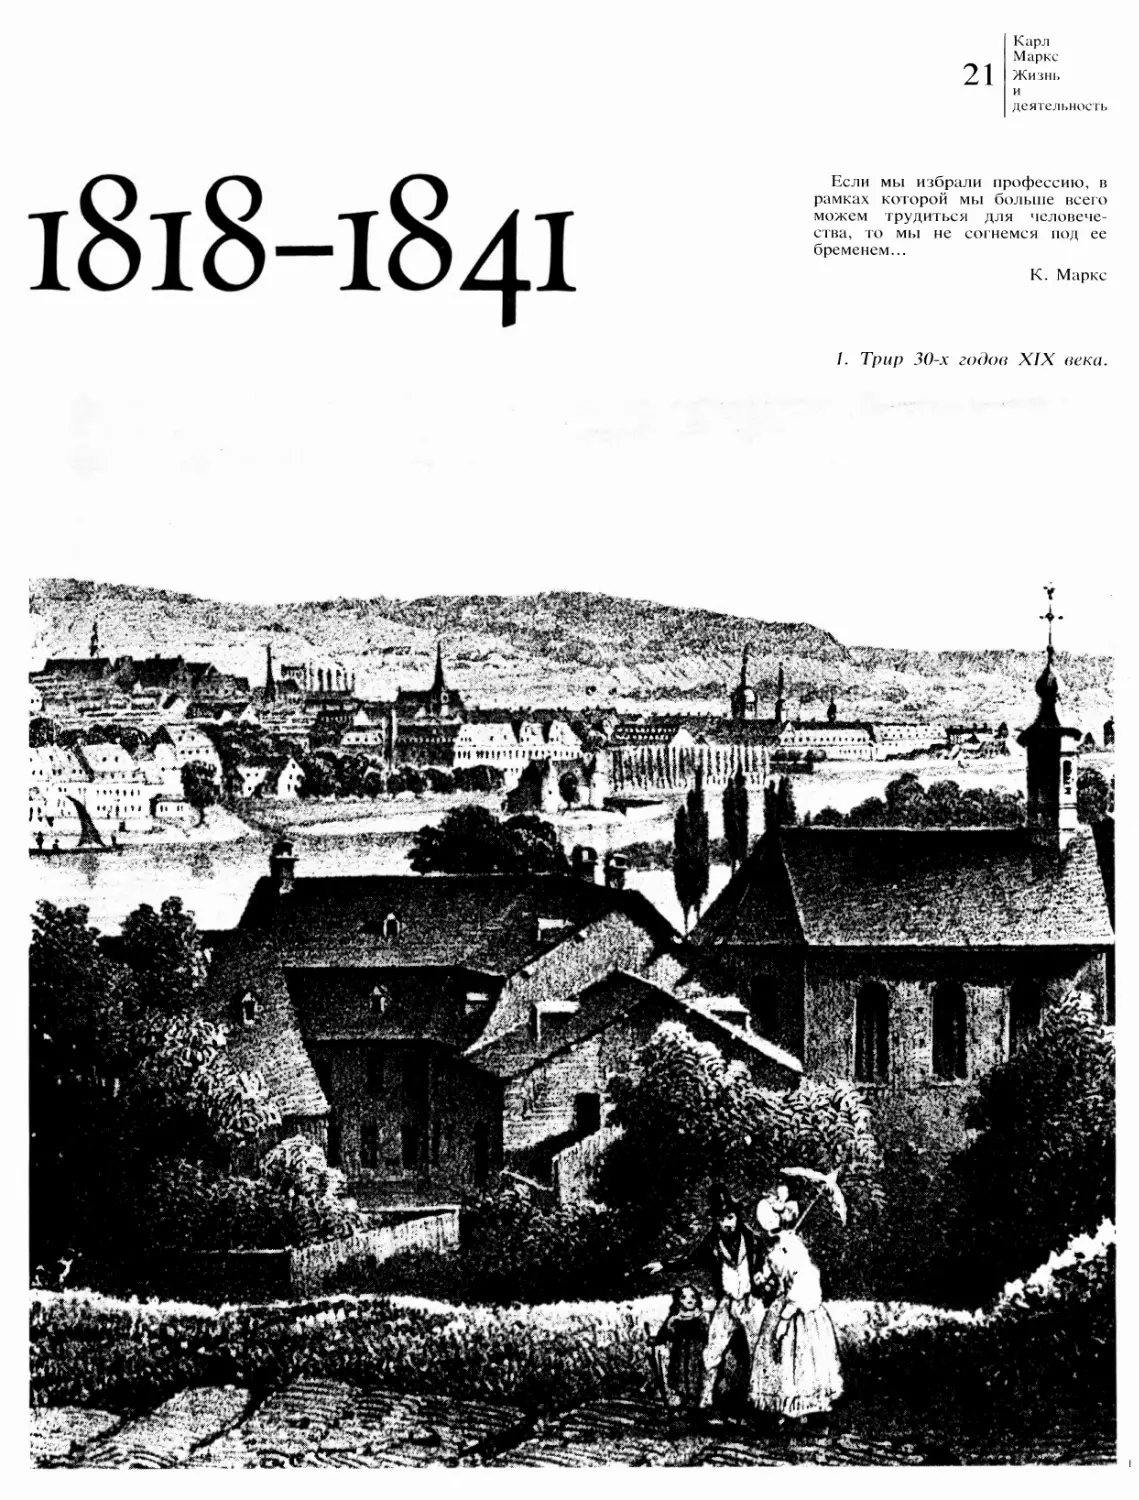 1818—1841